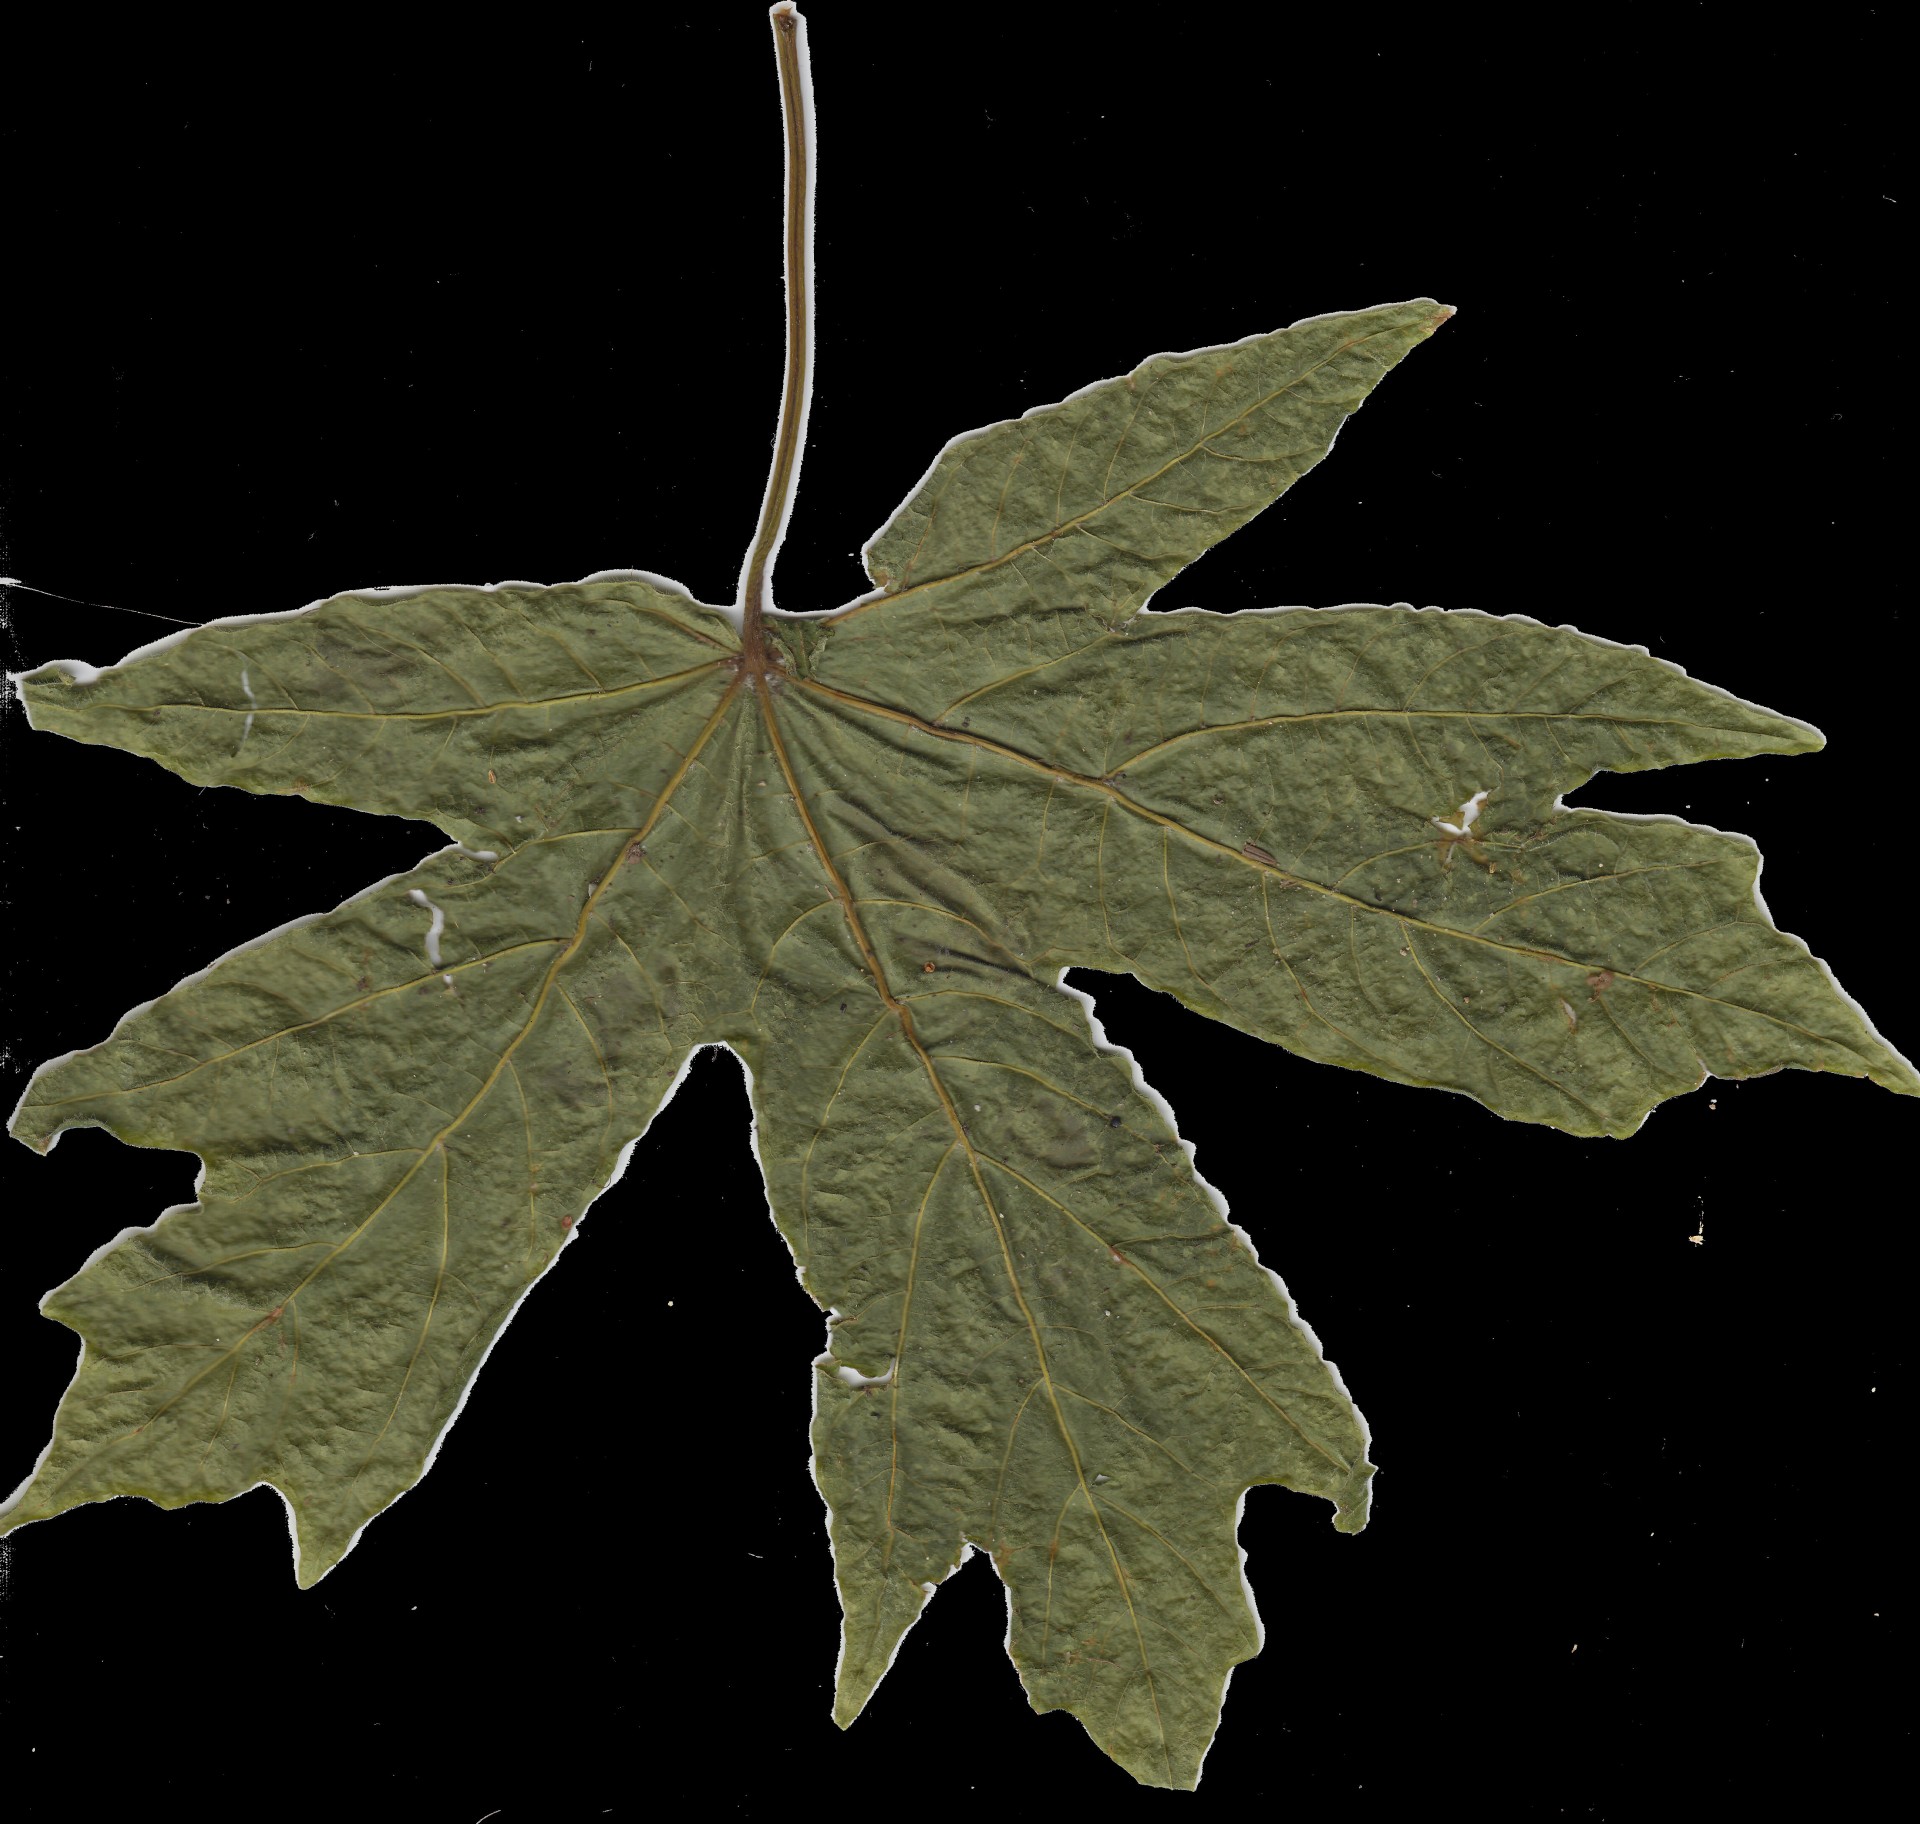 Dry Green Leaf